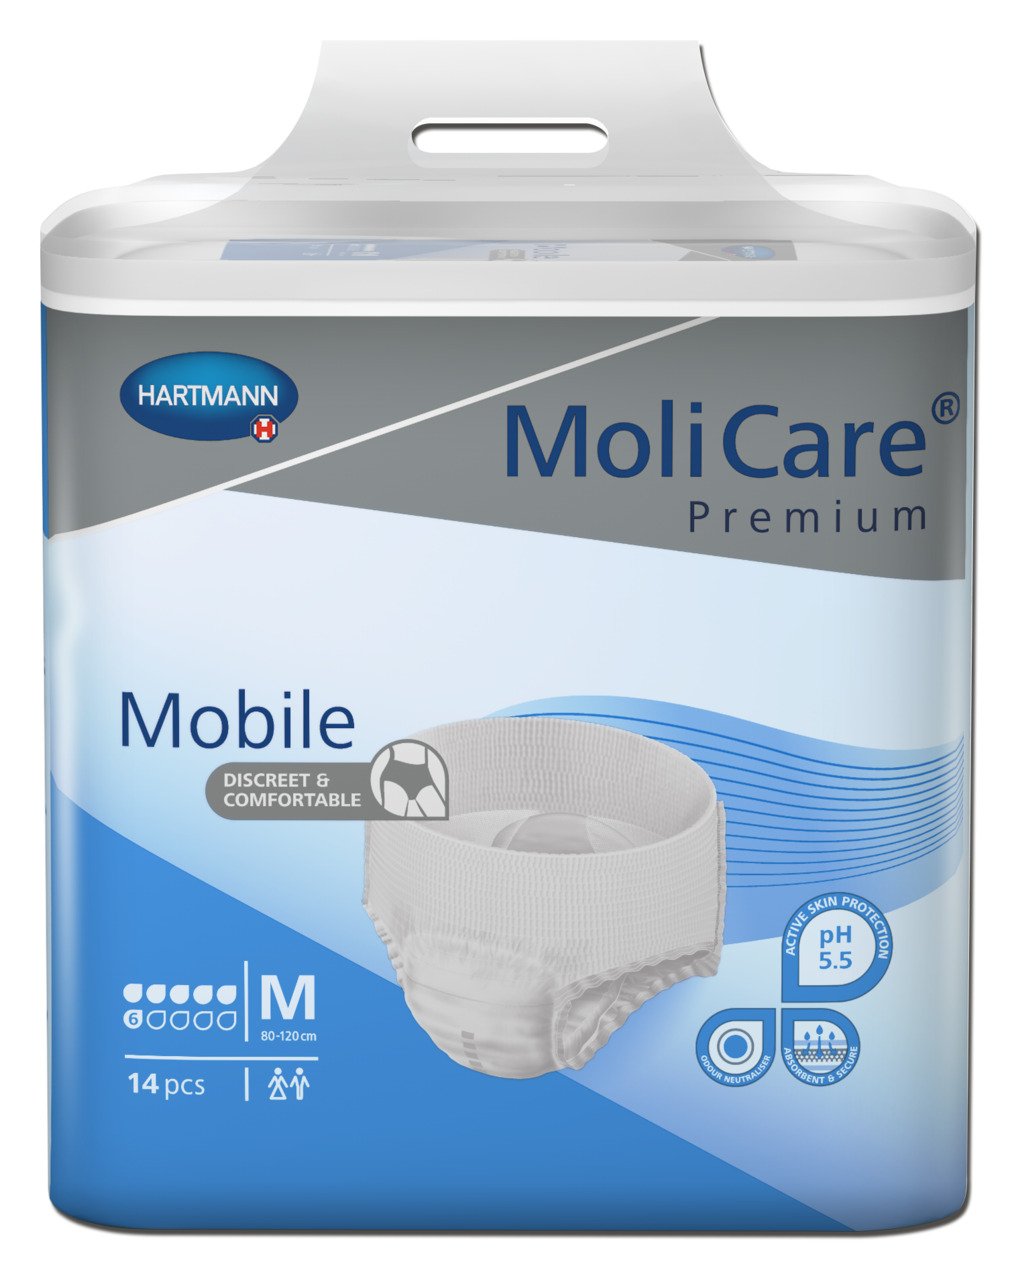 MoliCare Premium Mobile Medium 6 drops 42